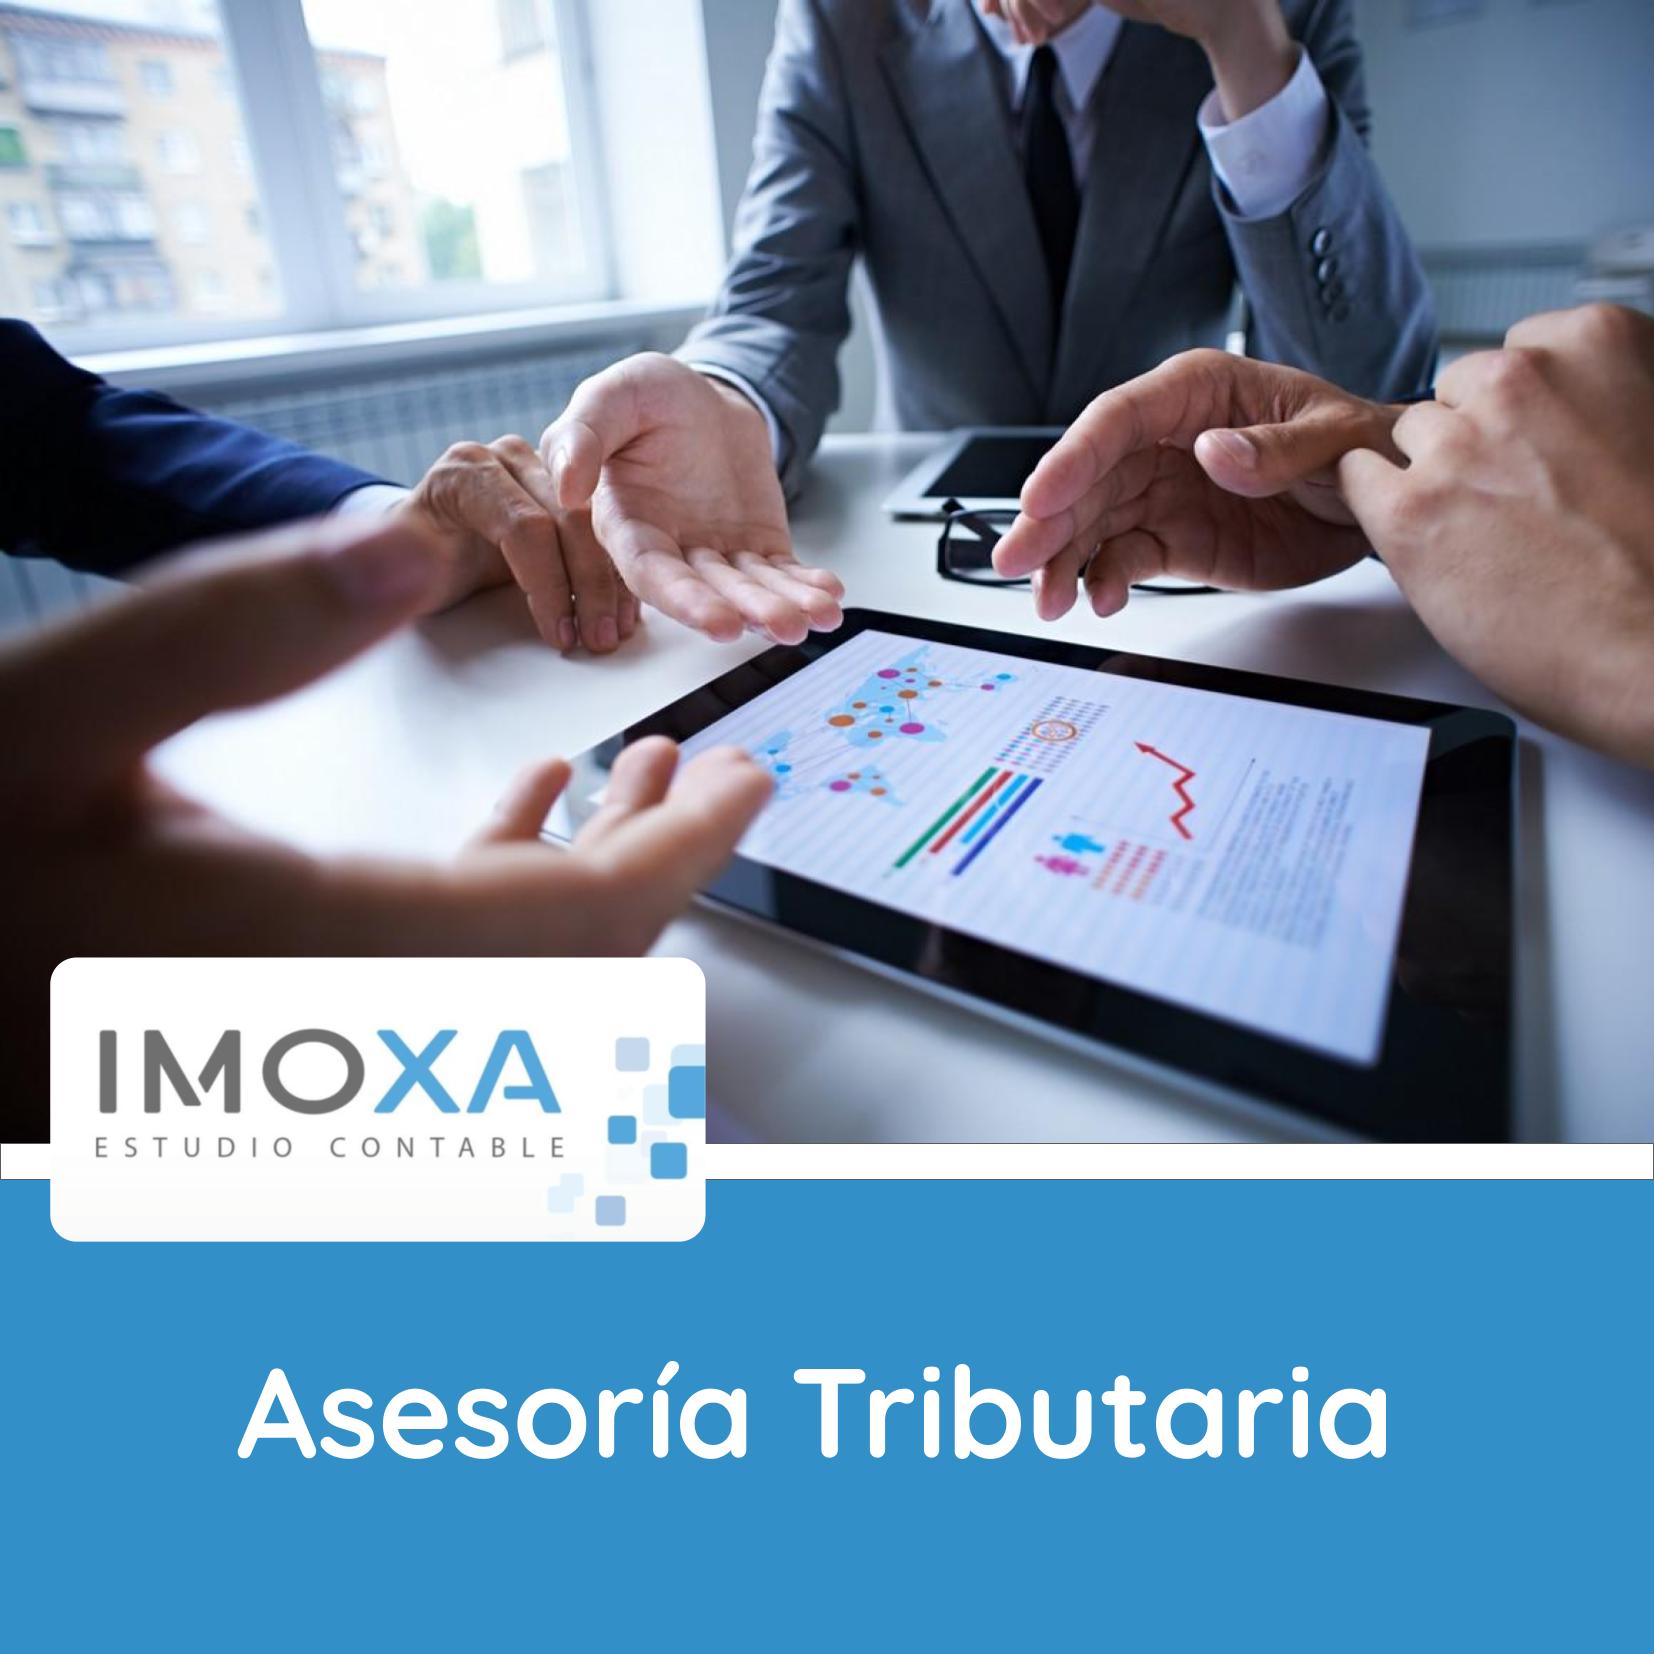 IMOXA Asesoria Tributaria